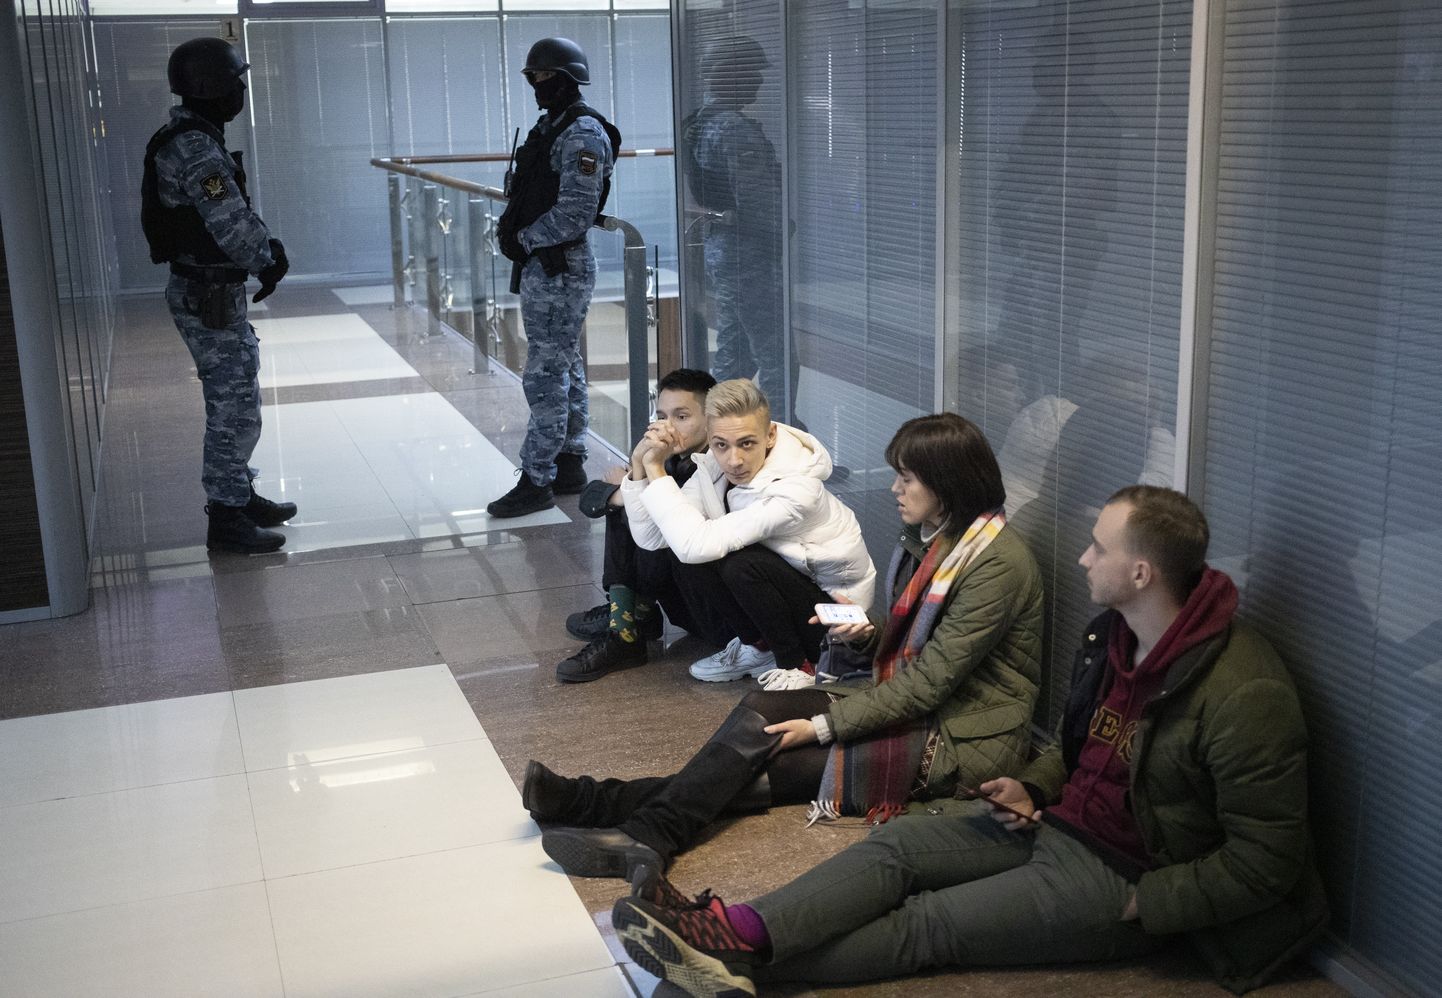 Opozicionāra Alekseja Navaļnija dibinātā Krievijas Pretkorupcijas fonda darbinieki sēž uz grīdas, kamēr policija veic kratīšanu birojā